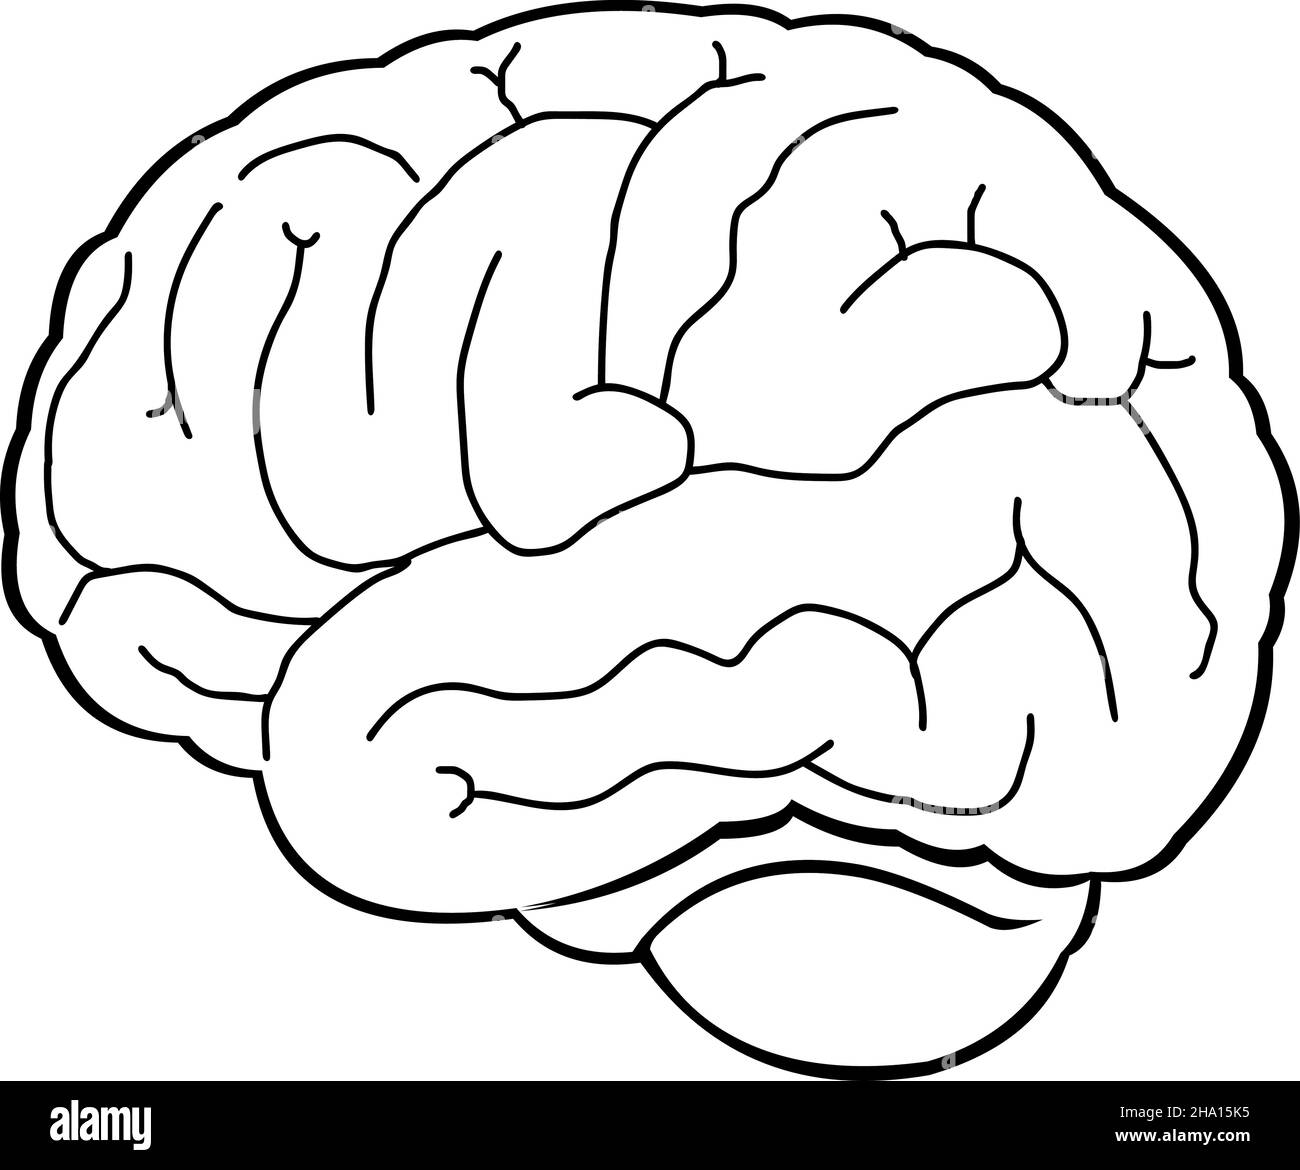 Illustration vectorielle d'un cerveau dessiné en noir et blanc Illustration de Vecteur